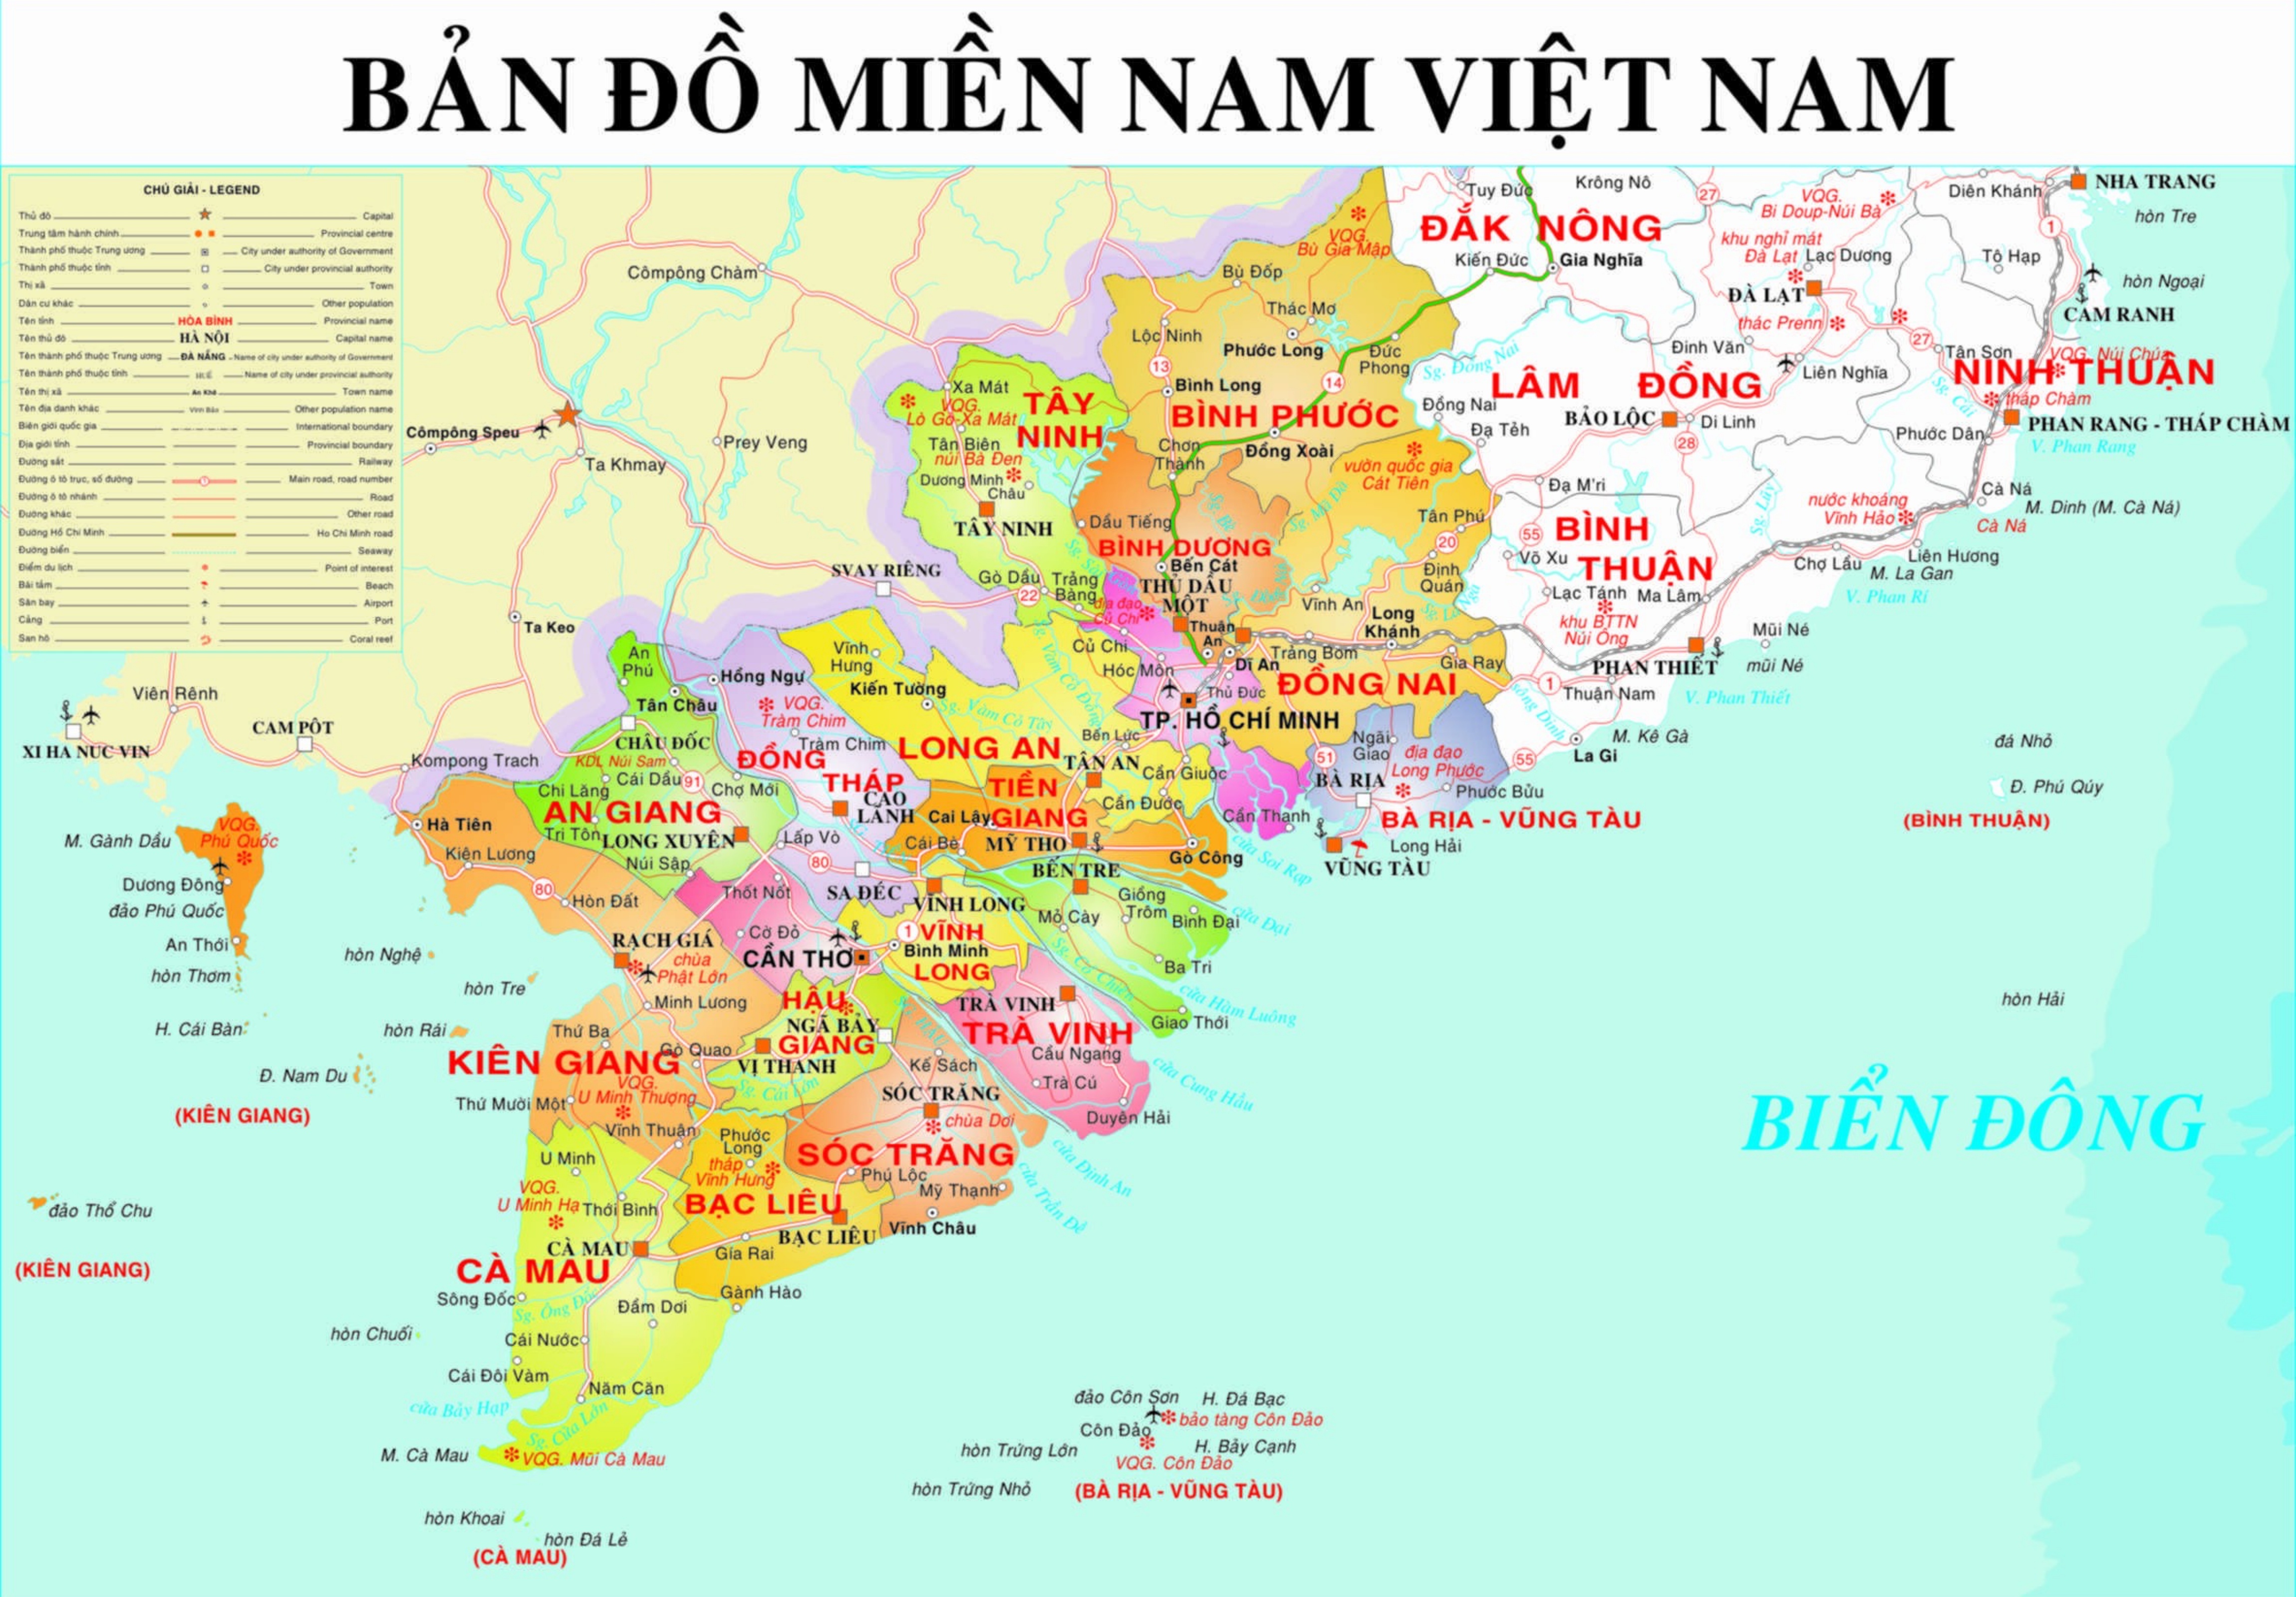 Sự phát triển đô thị và công nghiệp trong miền nam Việt Nam đang liên tục mở rộng, do đó biên tập bản đồ tỉnh là vô cùng cần thiết. Với sự đổi mới và cập nhật liên tục, các chuyên gia biên tập bản đồ tỉnh miền nam sẽ giúp bạn hiểu rõ hơn về đất đai và phát triển kinh tế tại địa phương.